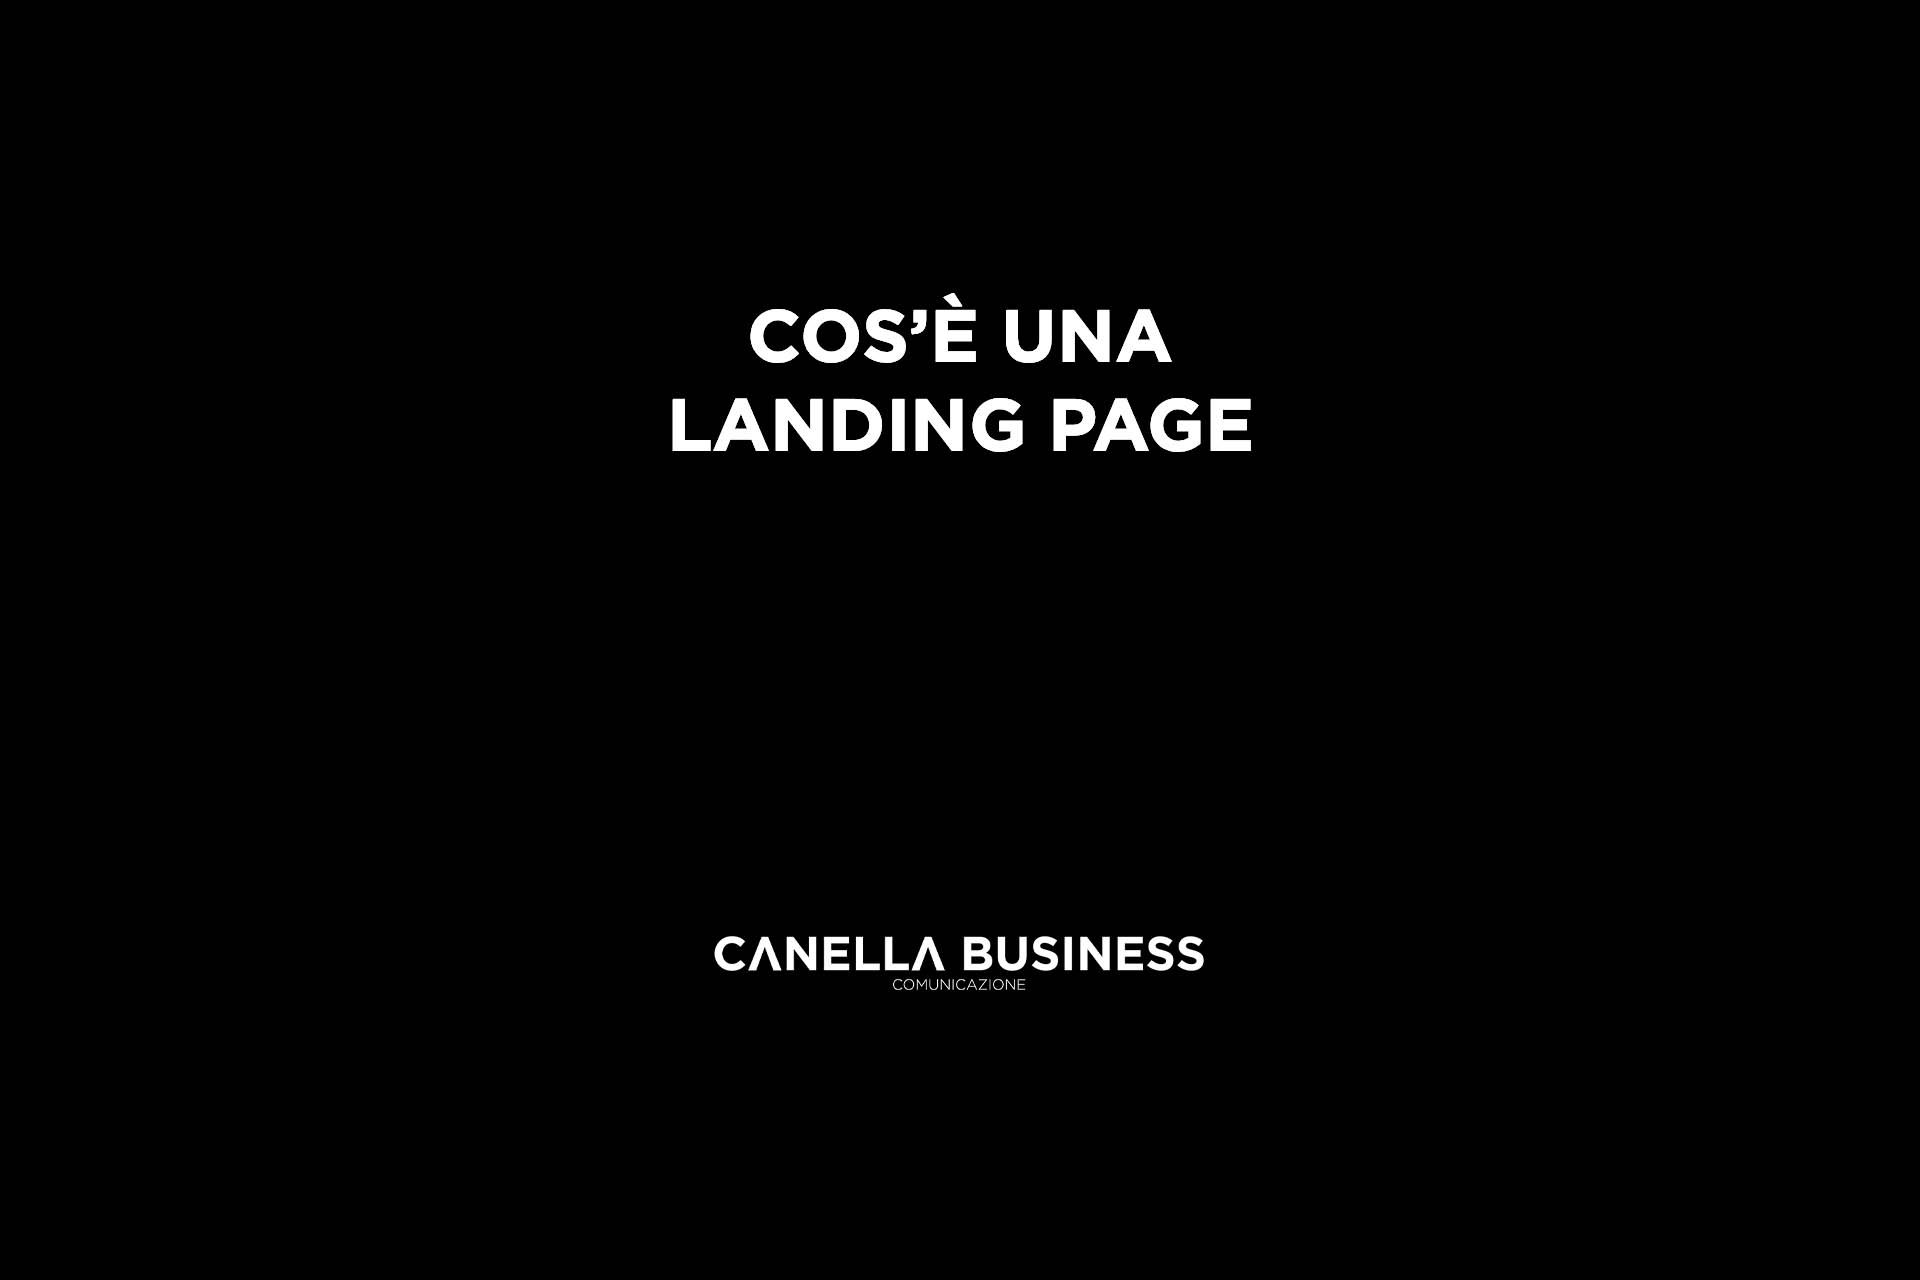 Cos'è una landing page?